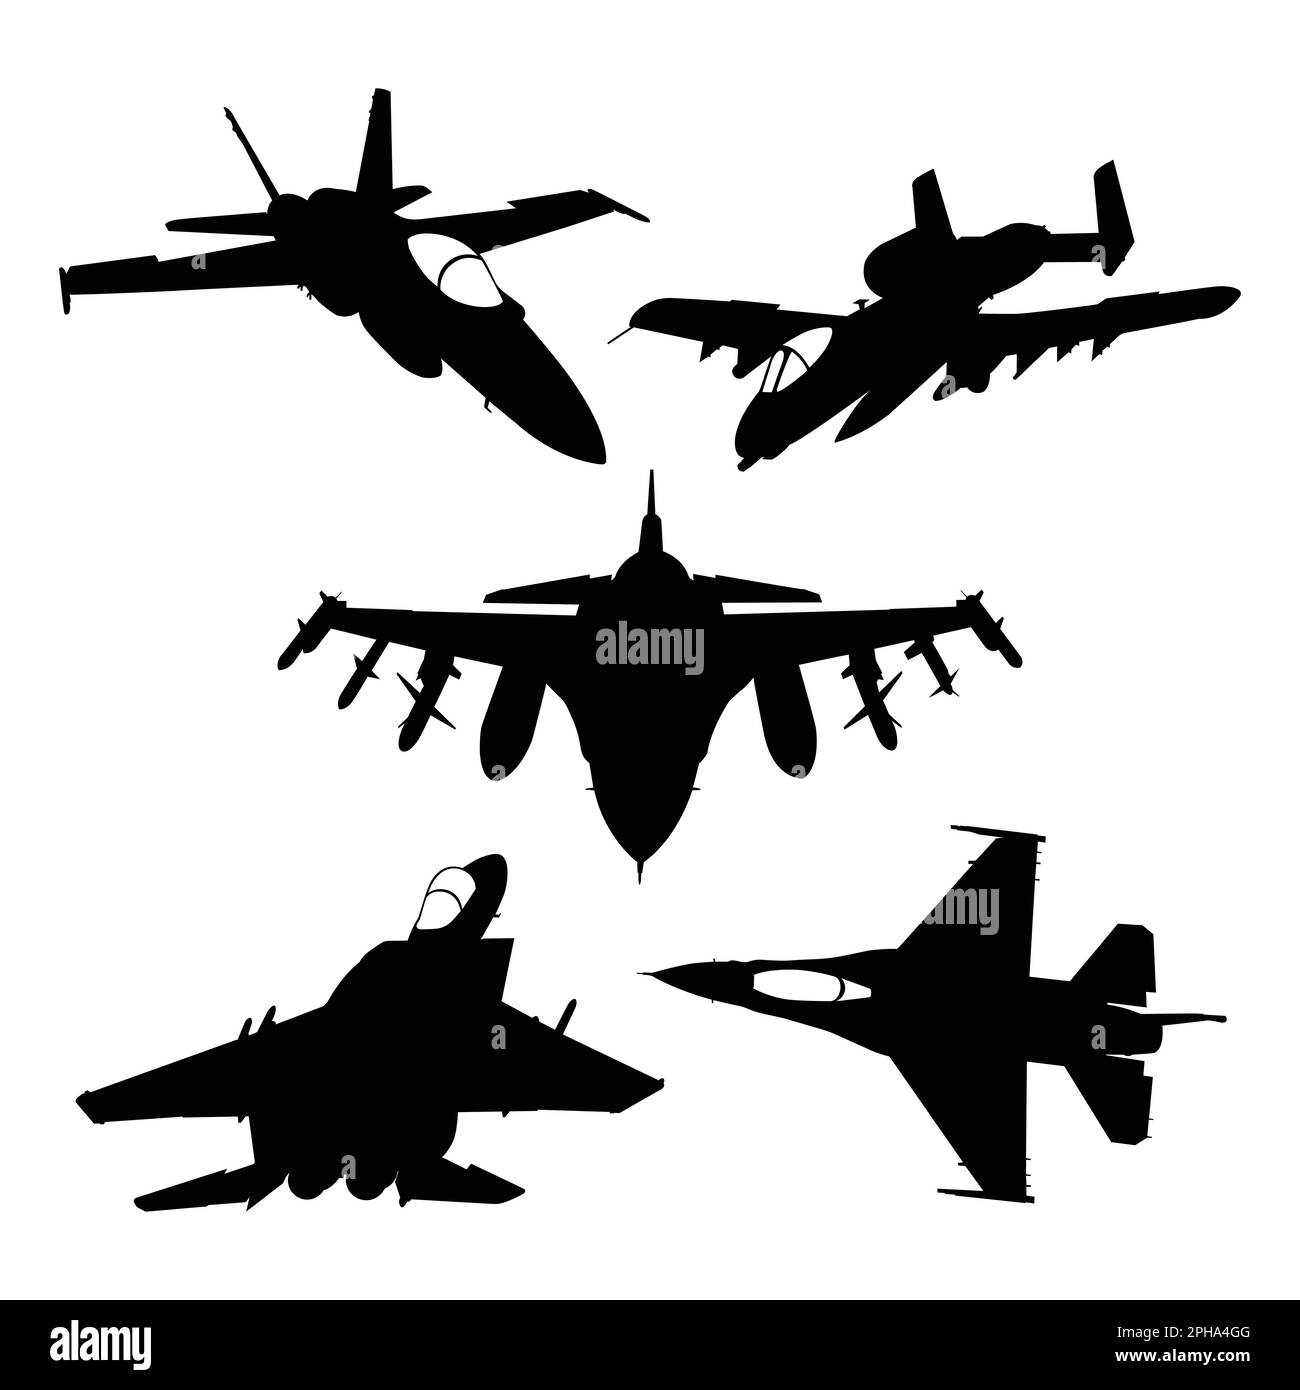 Ensemble de silhouettes d'avions militaires sur fond blanc. Illustration vectorielle Illustration de Vecteur